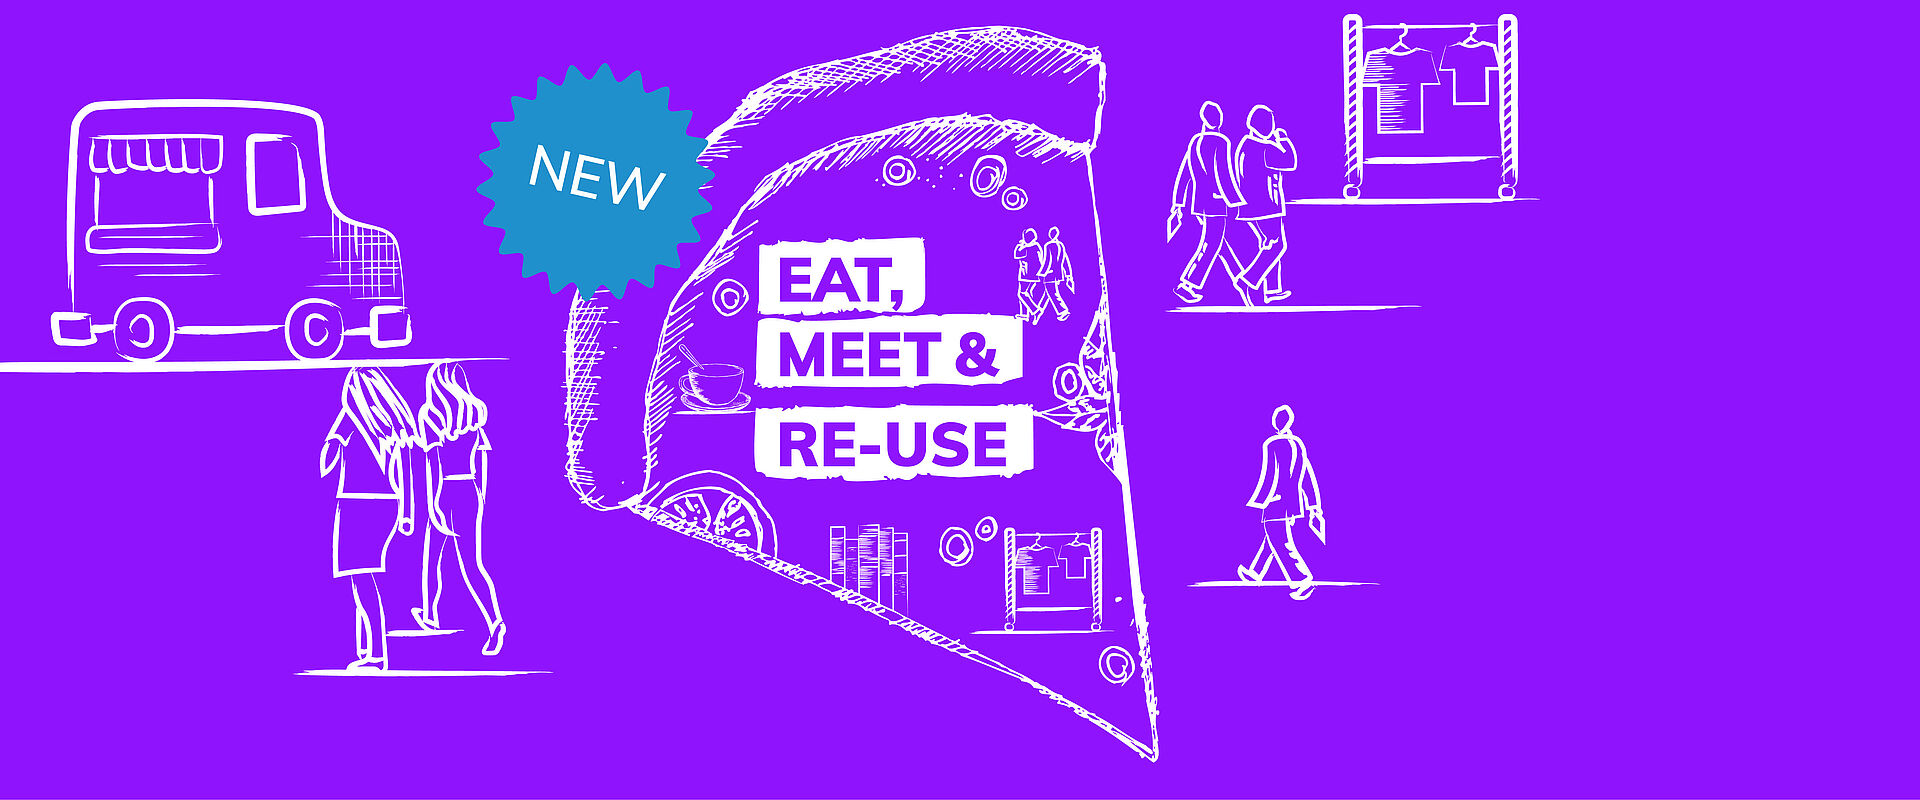 Veranstaltungsreihe Eat, Meet & Re-Use mit Tauschmarkt und Foodtrucks